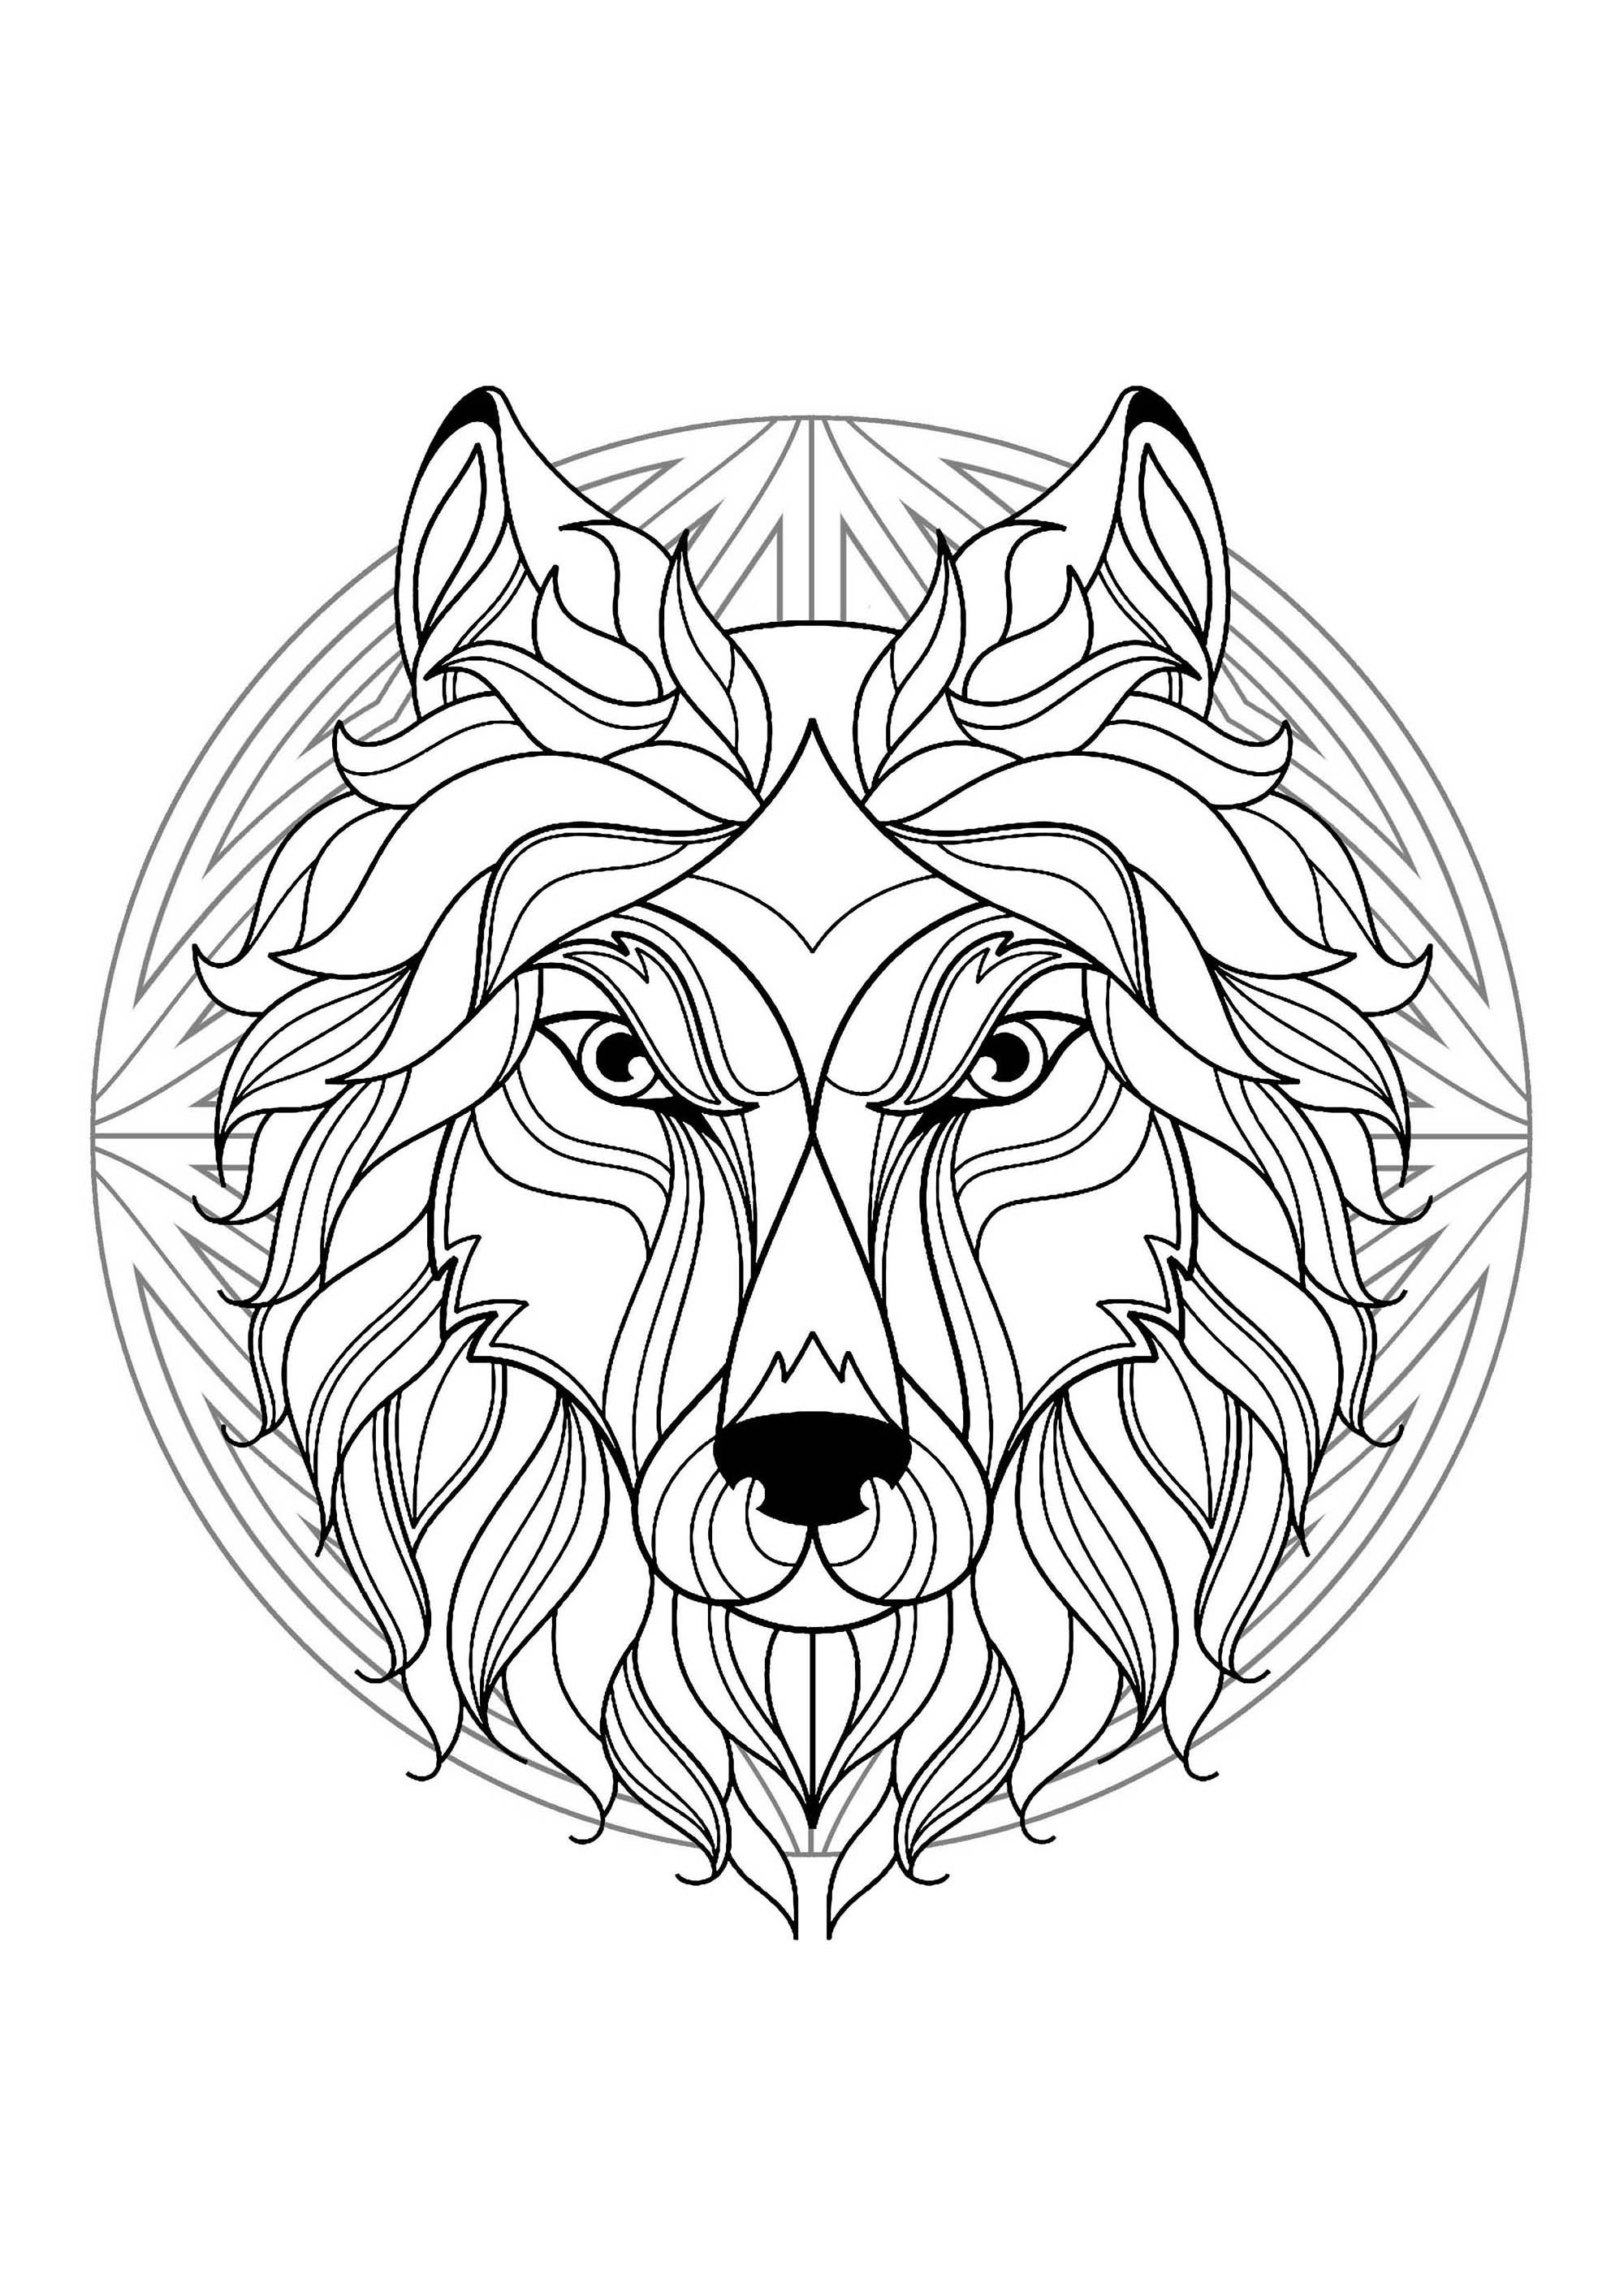 Mandala para colorear con magnífica cabeza de Lobo y motivos sencillos de fondo